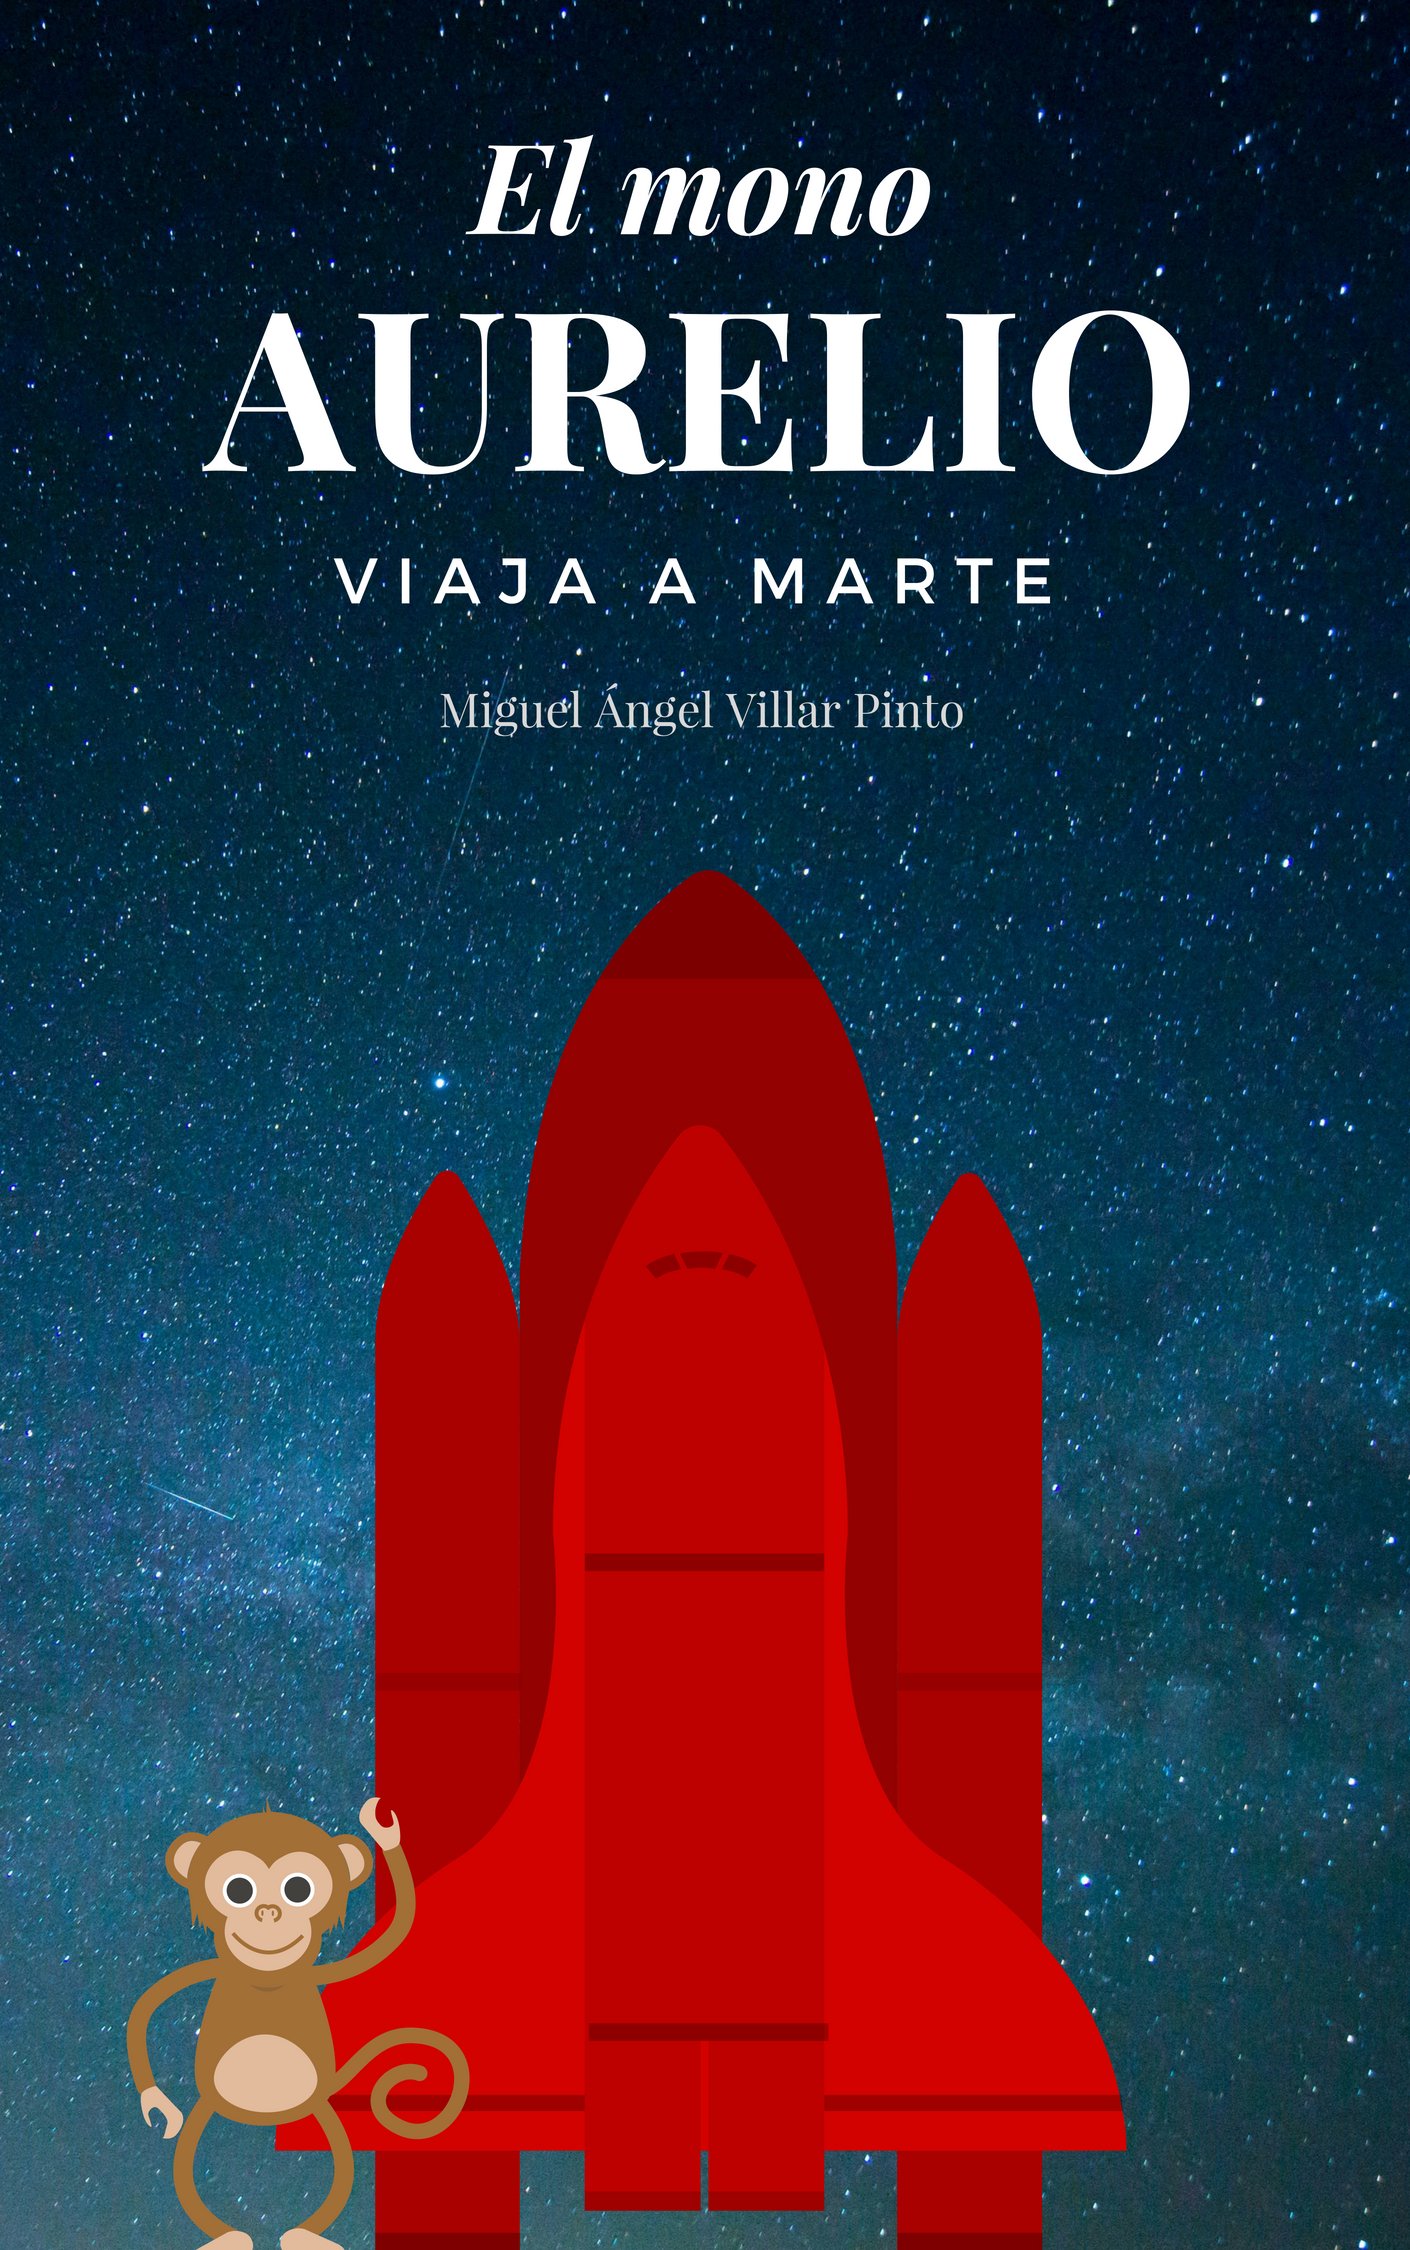 El mono Aurelio viaja a Marte (Libros infantiles (a partir de 8 años) nº 4) (Spanish Edition)